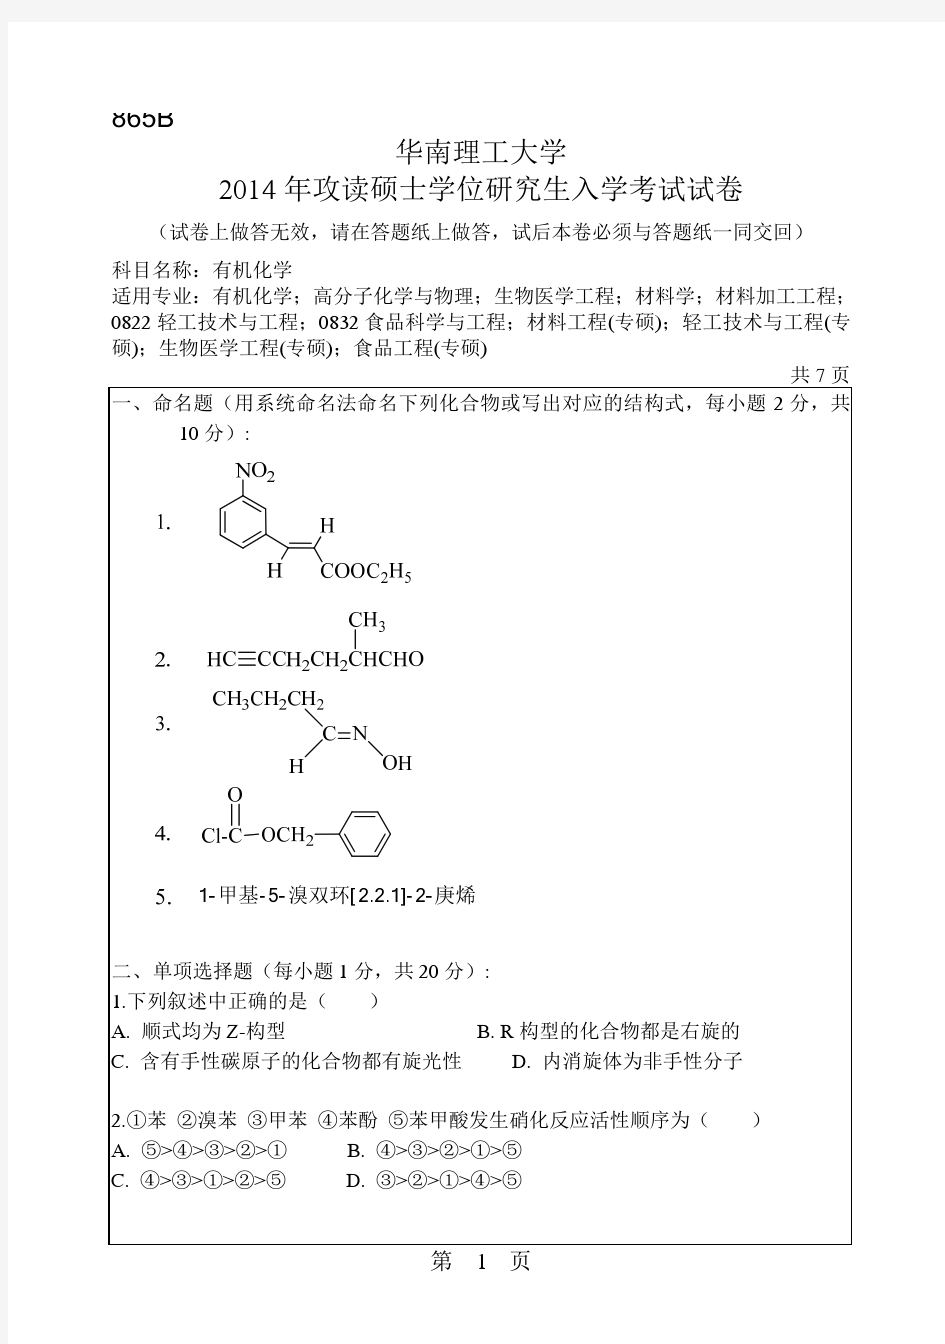 华南理工大学2014年研究生入学有机化学考研真题试卷-865B